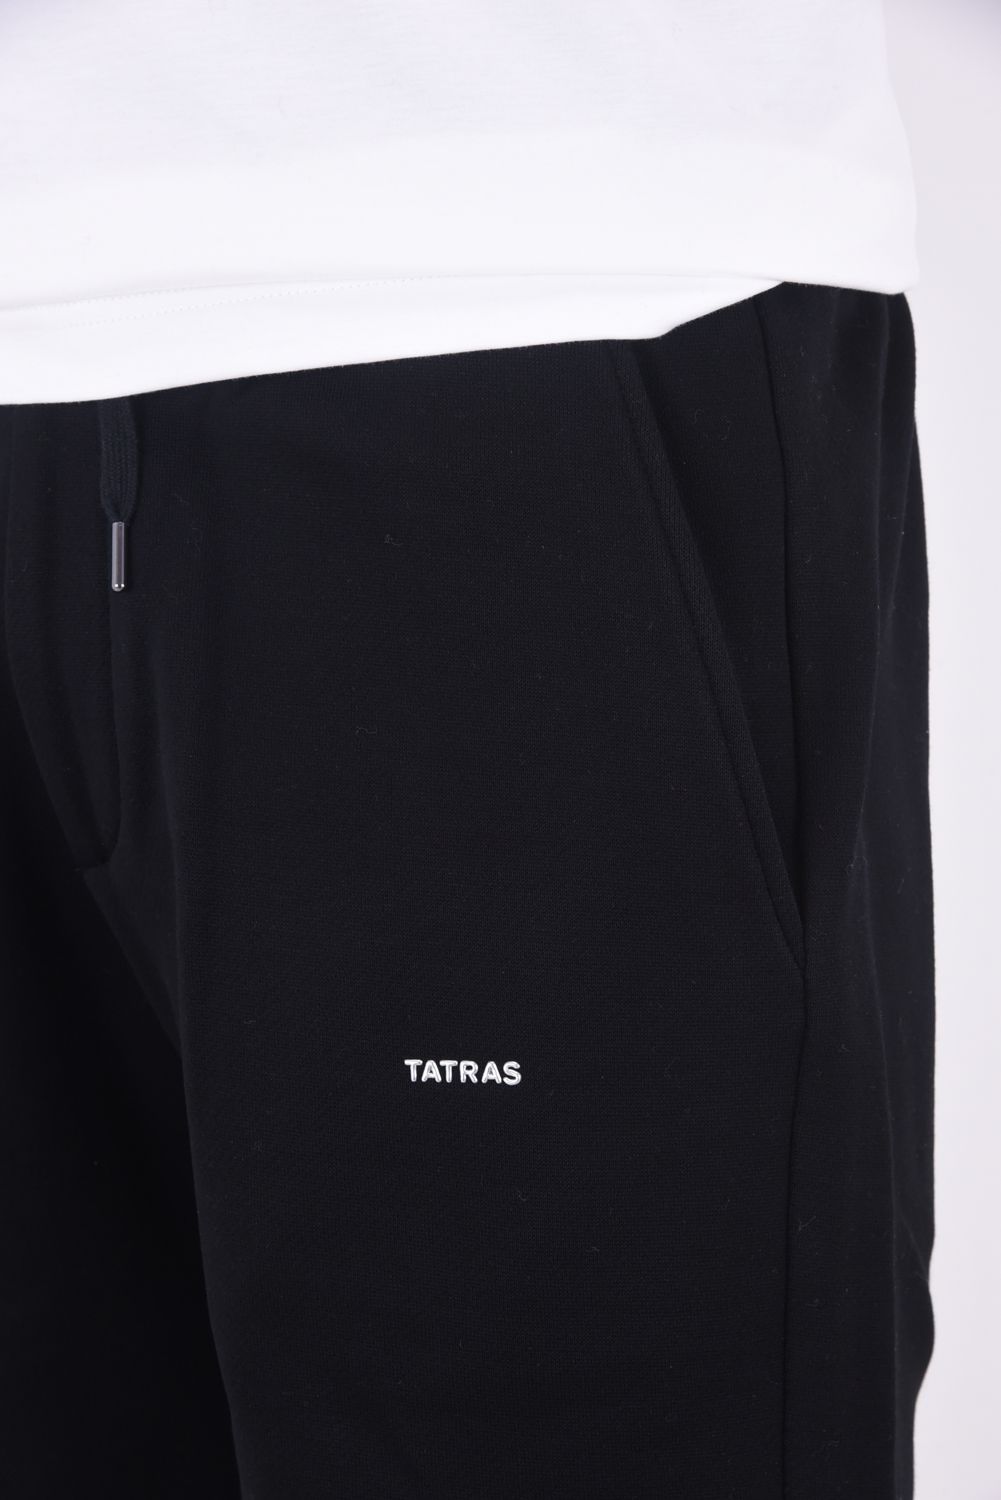 TATRAS - FUSSA (フッサ) / ワンポイントロゴ レギュラーフィット